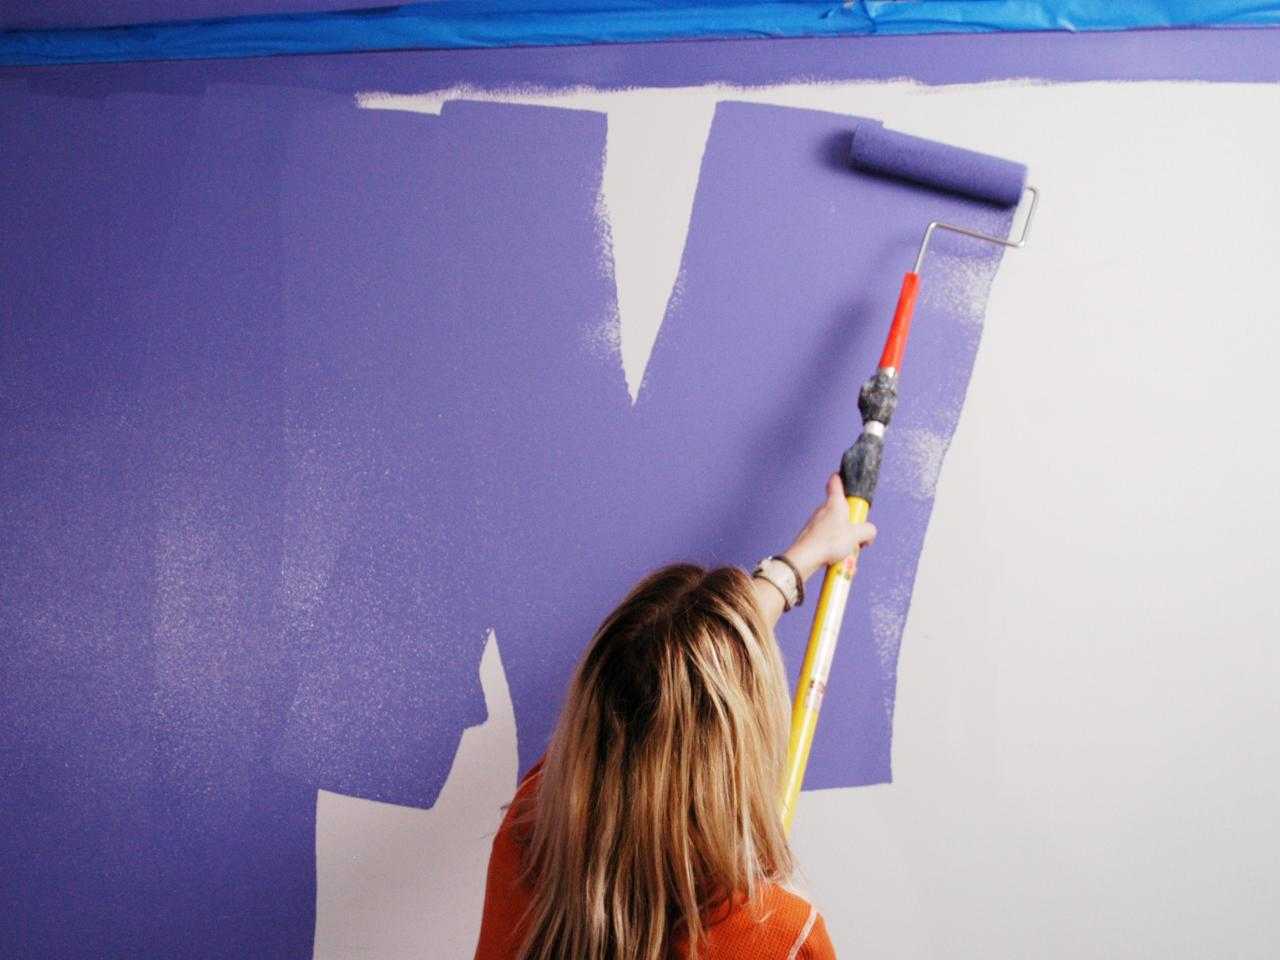 Водоэмульсионная краска для стен и потолков: все что нужно знать перед началом ремонта